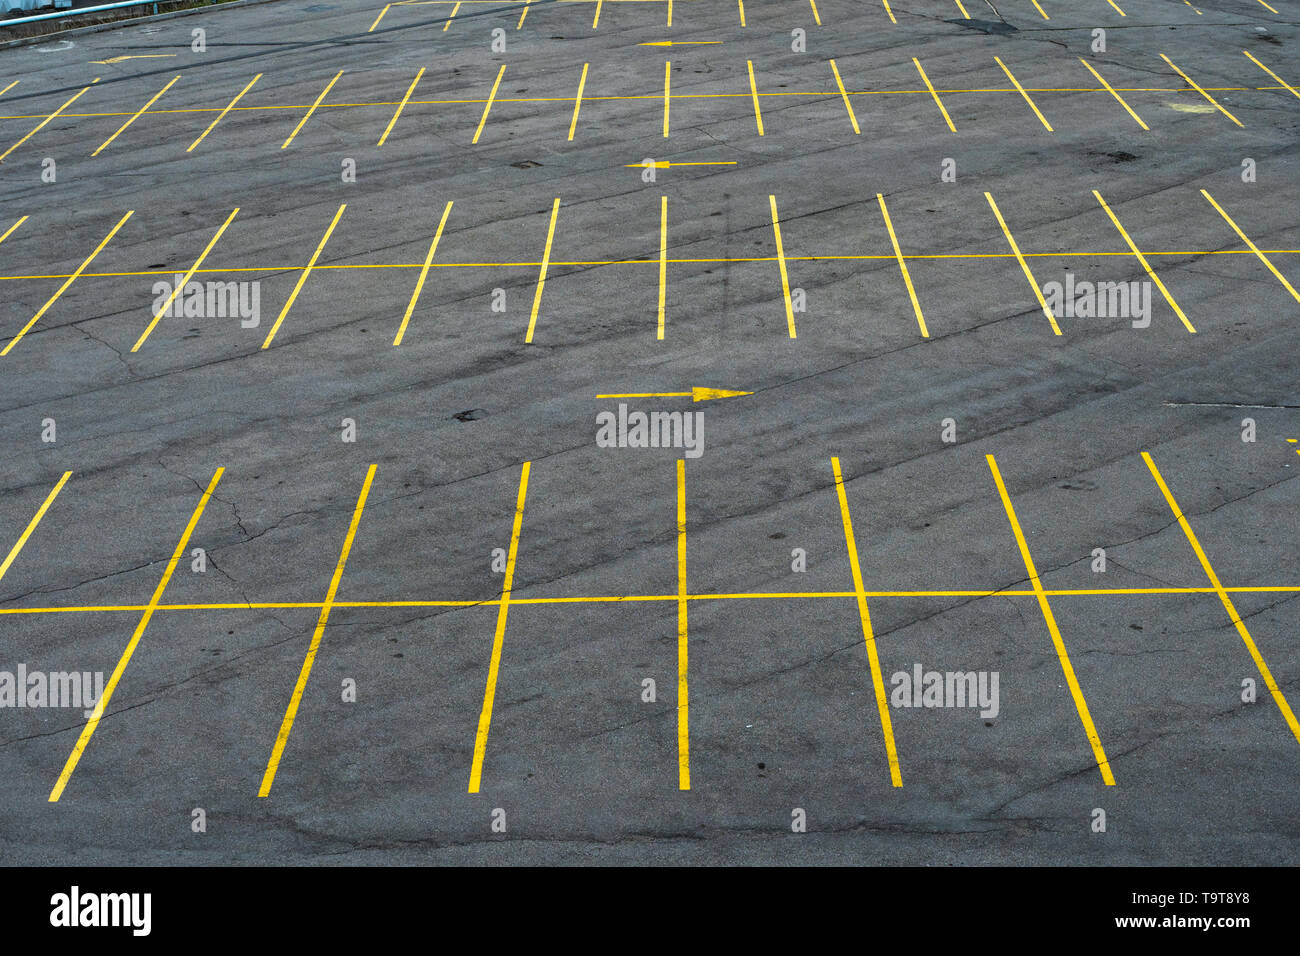 Die Markierungslinien auf dem Parkplatz mit gelber Farbe auf Asphalt.  Großer Parkplatz, leer Stockfotografie - Alamy